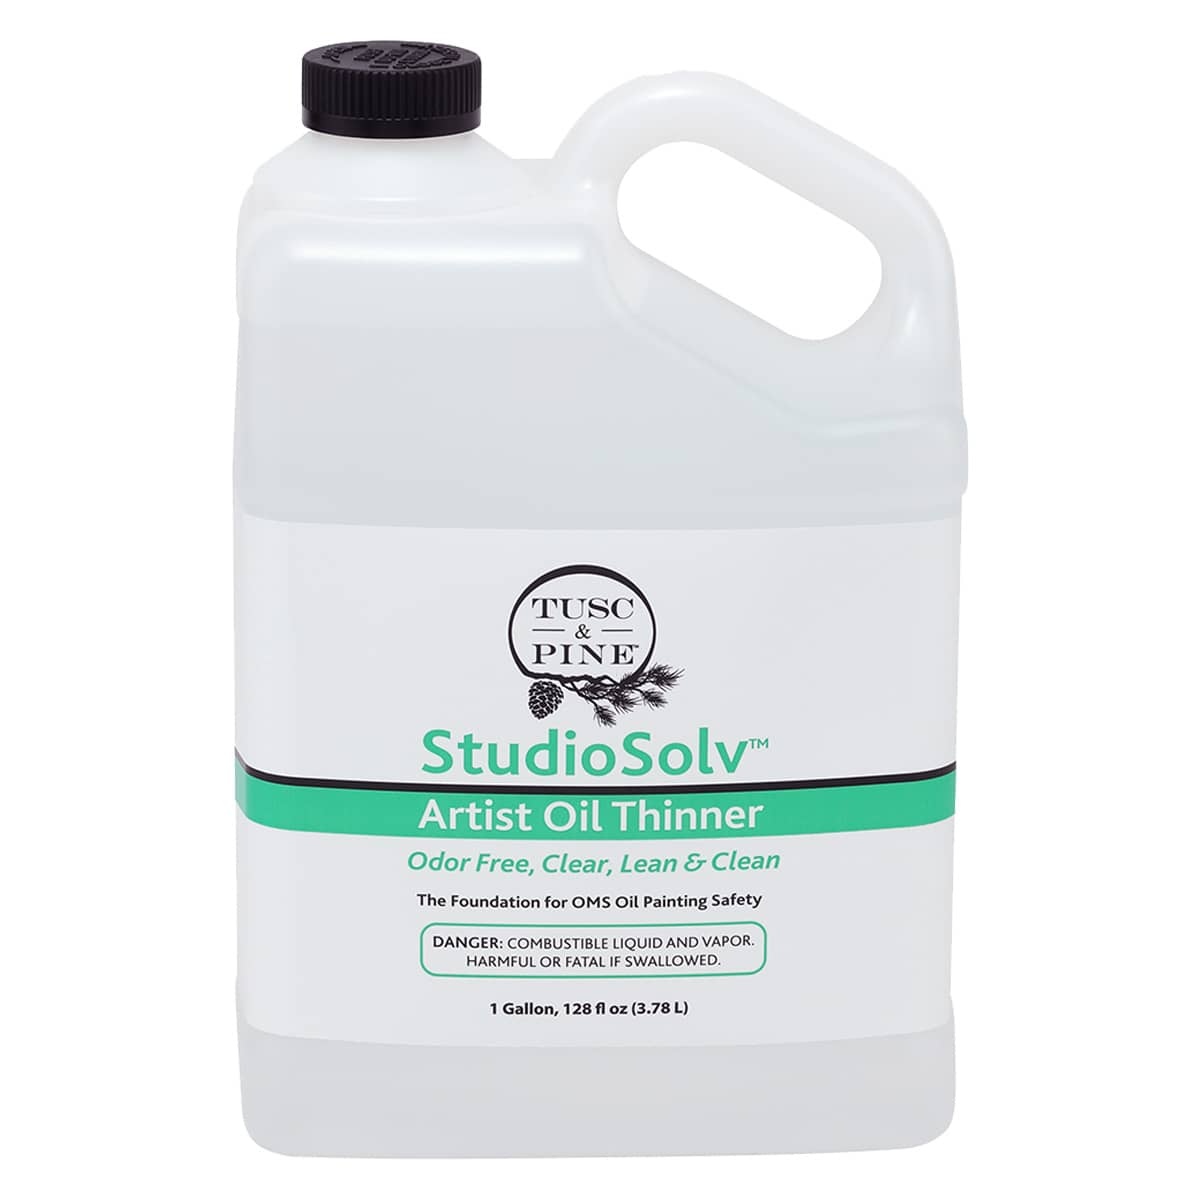 StudioSolv™ Artist Oil Thinning Medium, 1 Gallon